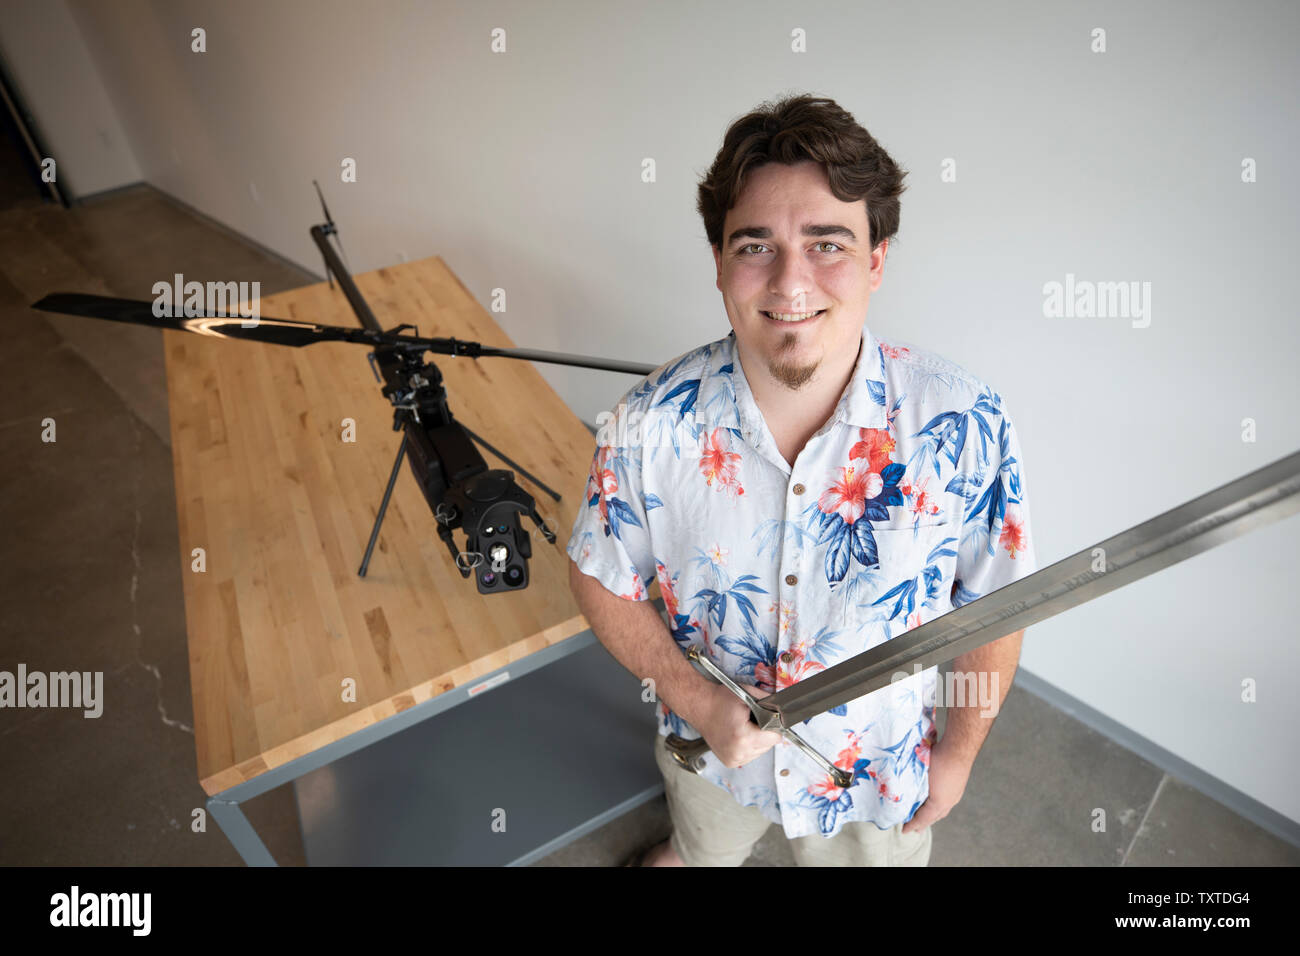 Palmer Luckey, fondatore delle industrie Anduril con loro reticolo Drone fantasma. Anduril è chiamato dopo la spada nella trilogia del Signore degli Anelli Foto Stock